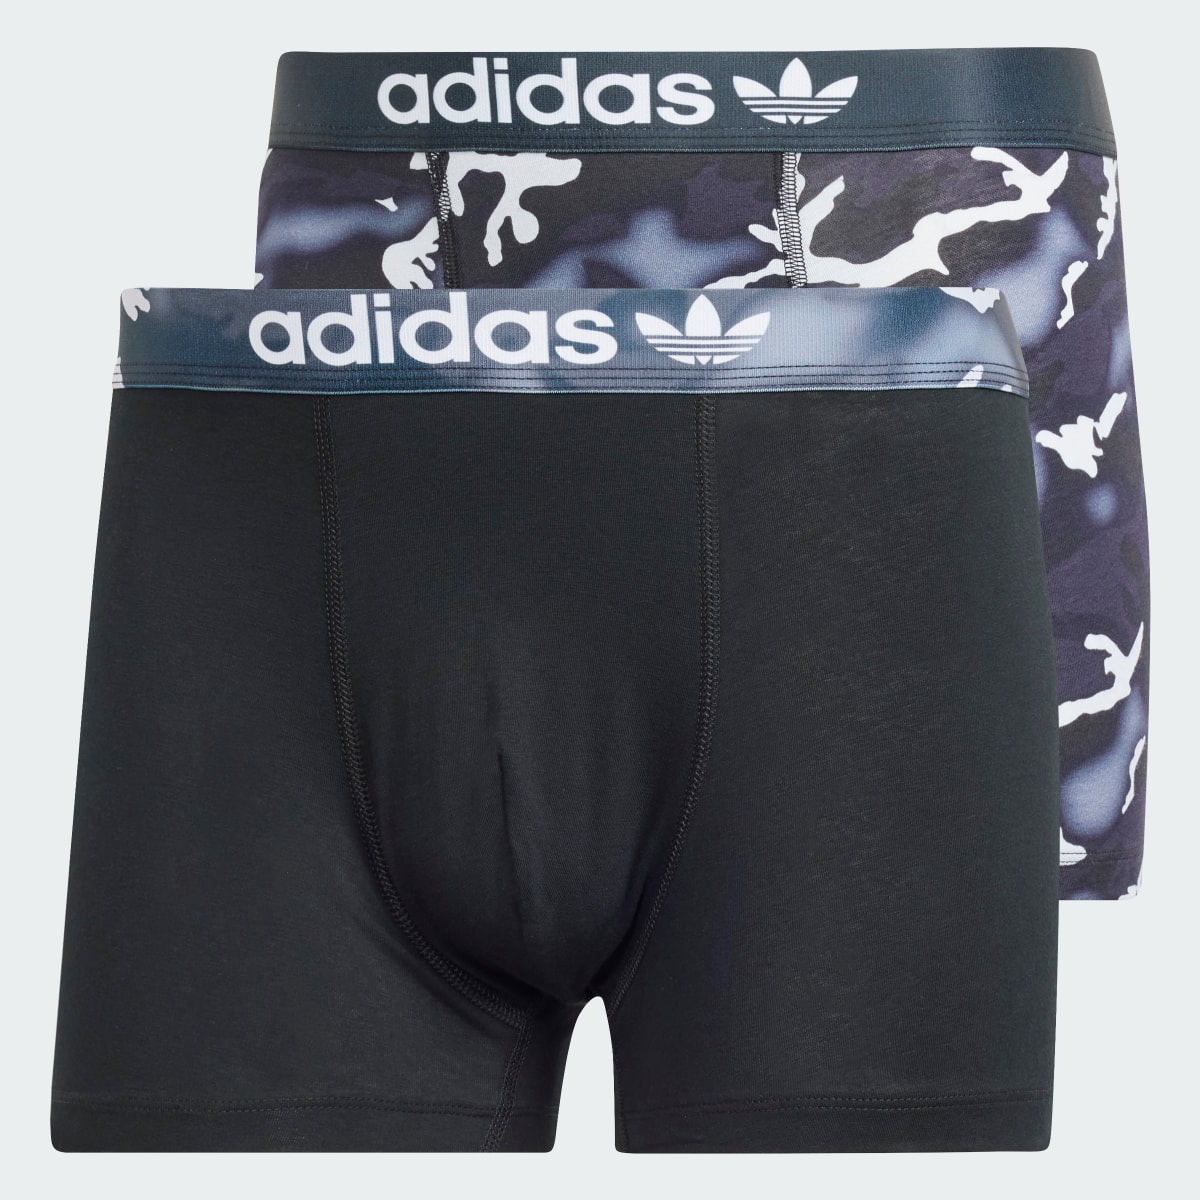 Adidas Comfort Flex Cotton Trunk Underwear 2 Pack. 5